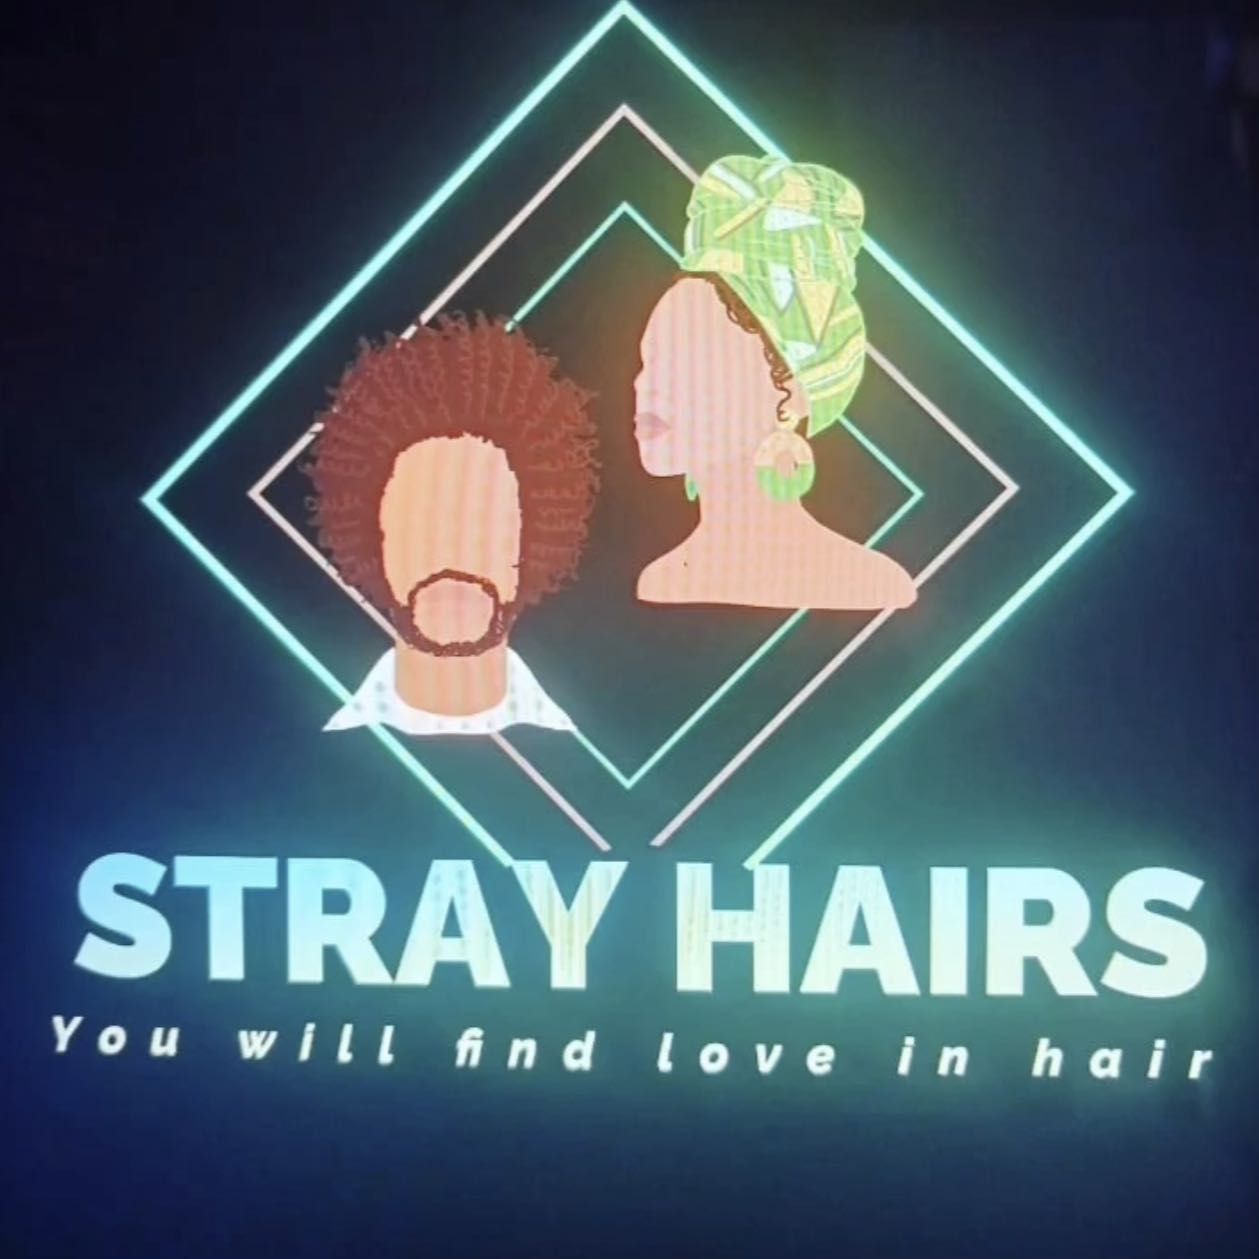 Stray Hairs Salon, 2600 South Rd, 133, Poughkeepsie, 12601